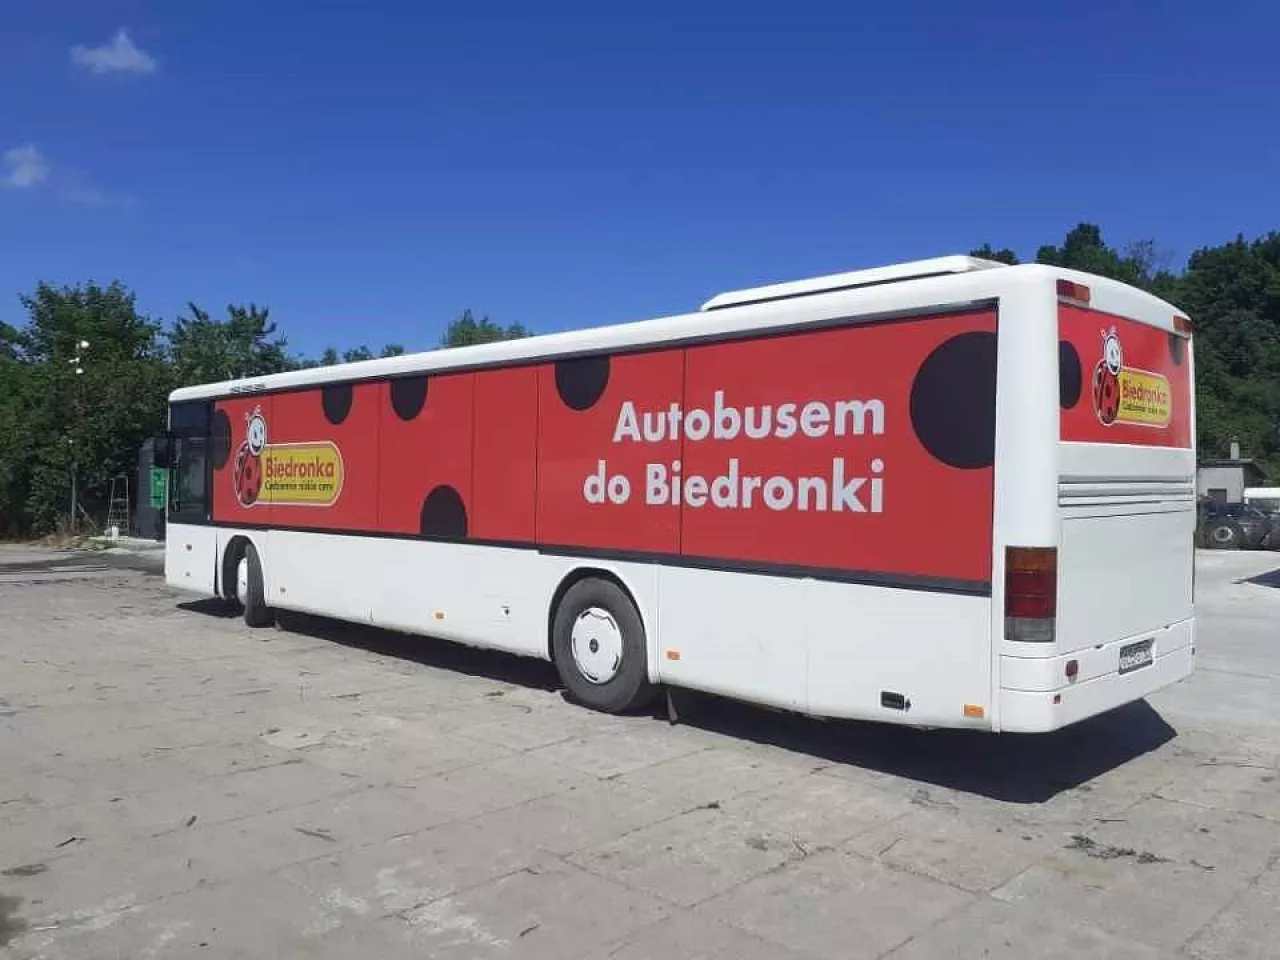 Już od 28 czerwca w Łebie można korzystać ze specjalnego autobusu Biedronki (fot. Biedronka)